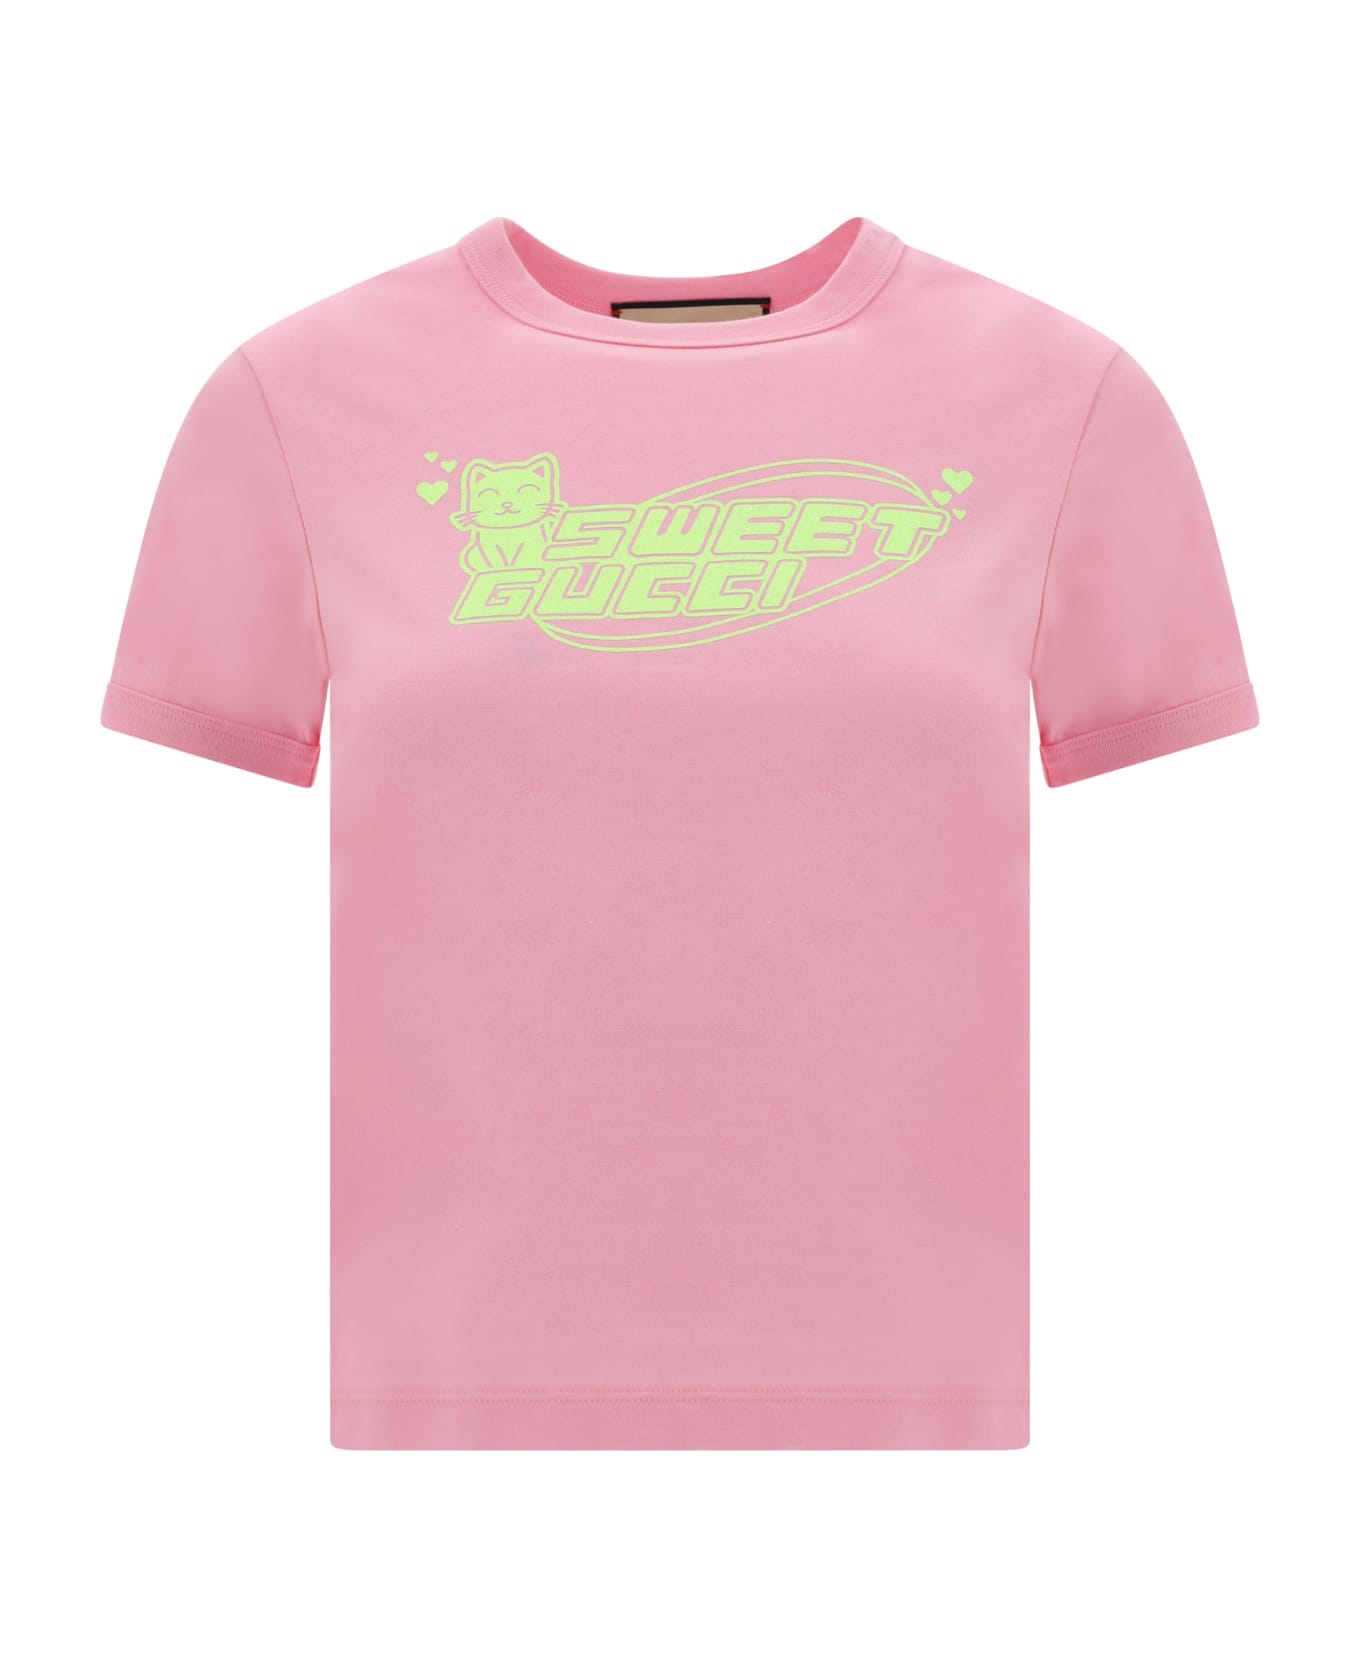 Gucci T-shirt - Sugar Pink